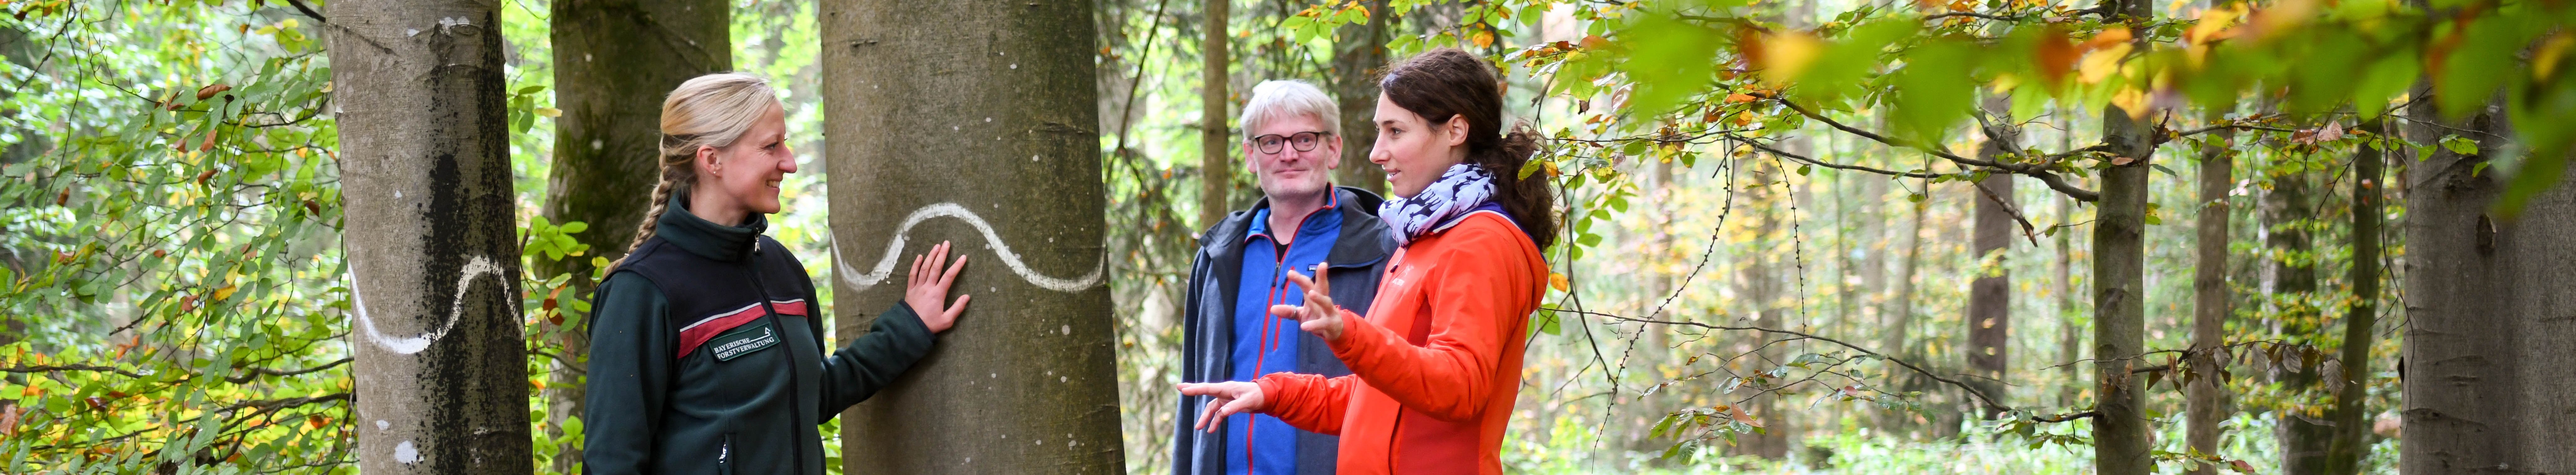 Försterin in Dienstkleidung berät Waldbesitzerpaar in einem Waldbestand im Herbst. Sie stehen vor einer alten Buche, welcher mit einer weißen Wellenlinie als Biotopbaum gekennzeichnet ist.